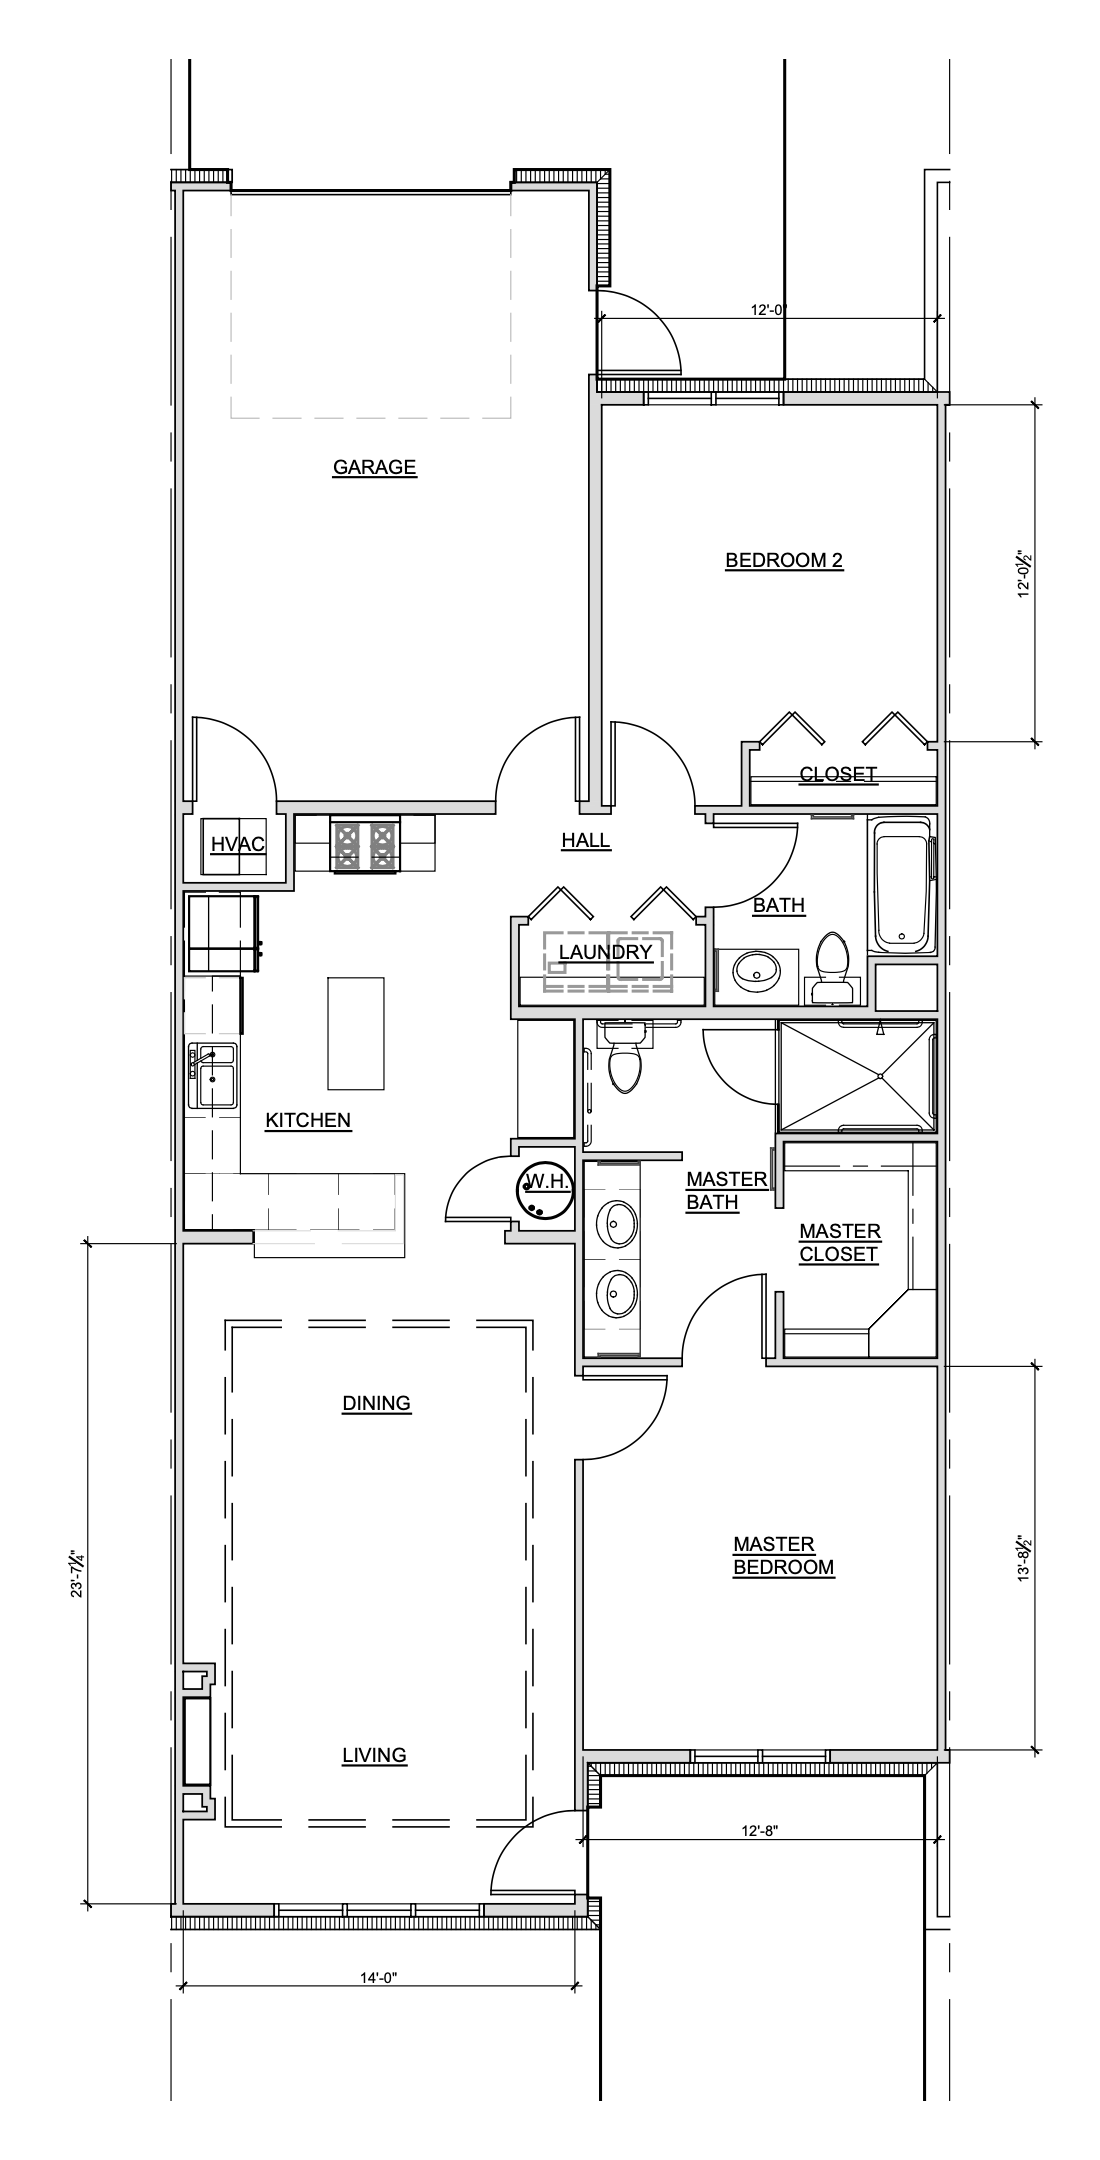 Aaron Standard floorplan and specifications